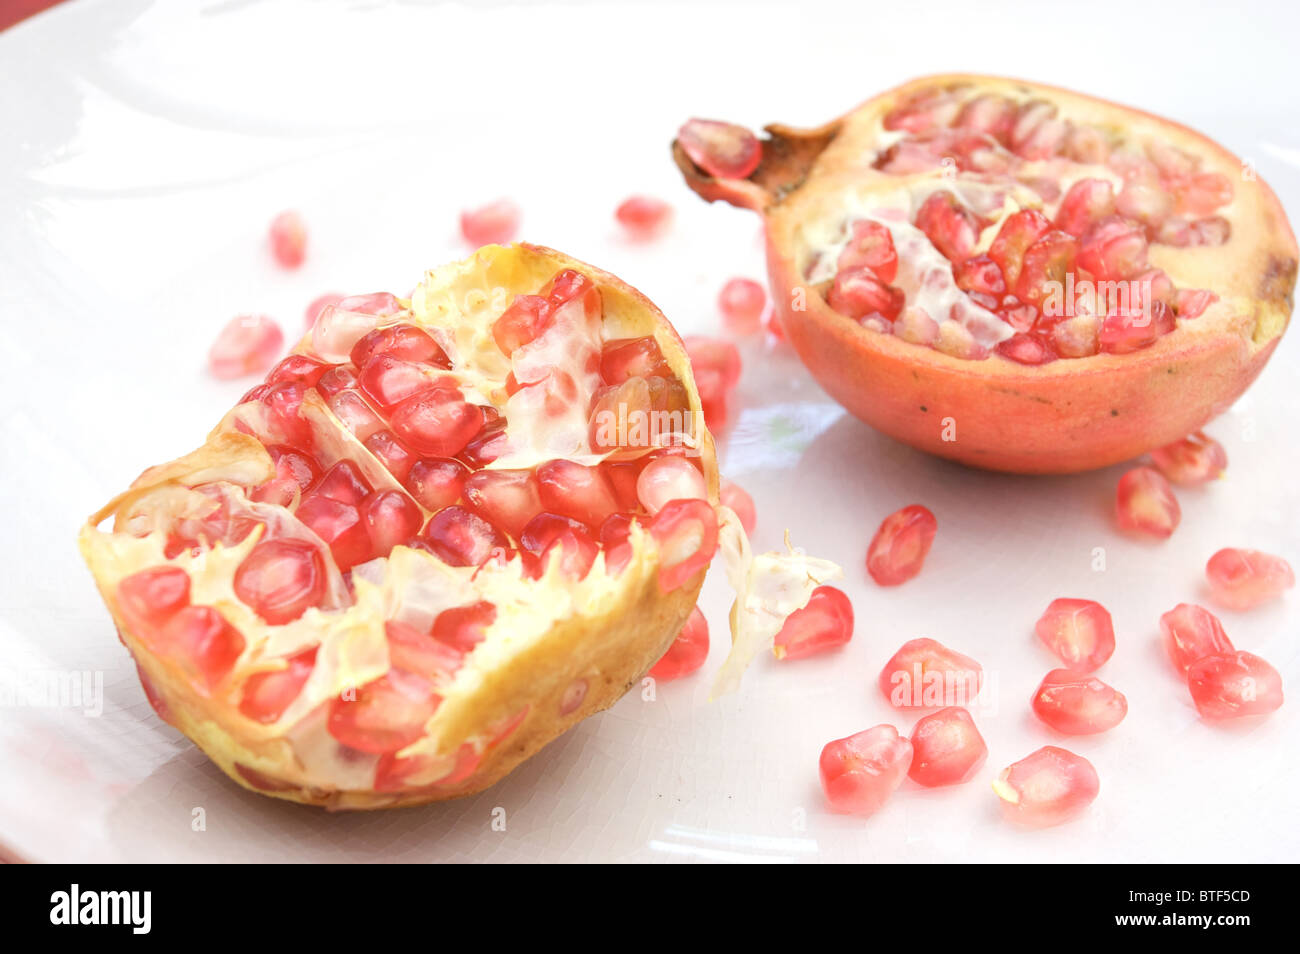 Granatapfel 2 Hälften, Samen, Obst, exotische Früchte, gesunde Lebensmittel, Heilmittel, Stockfoto